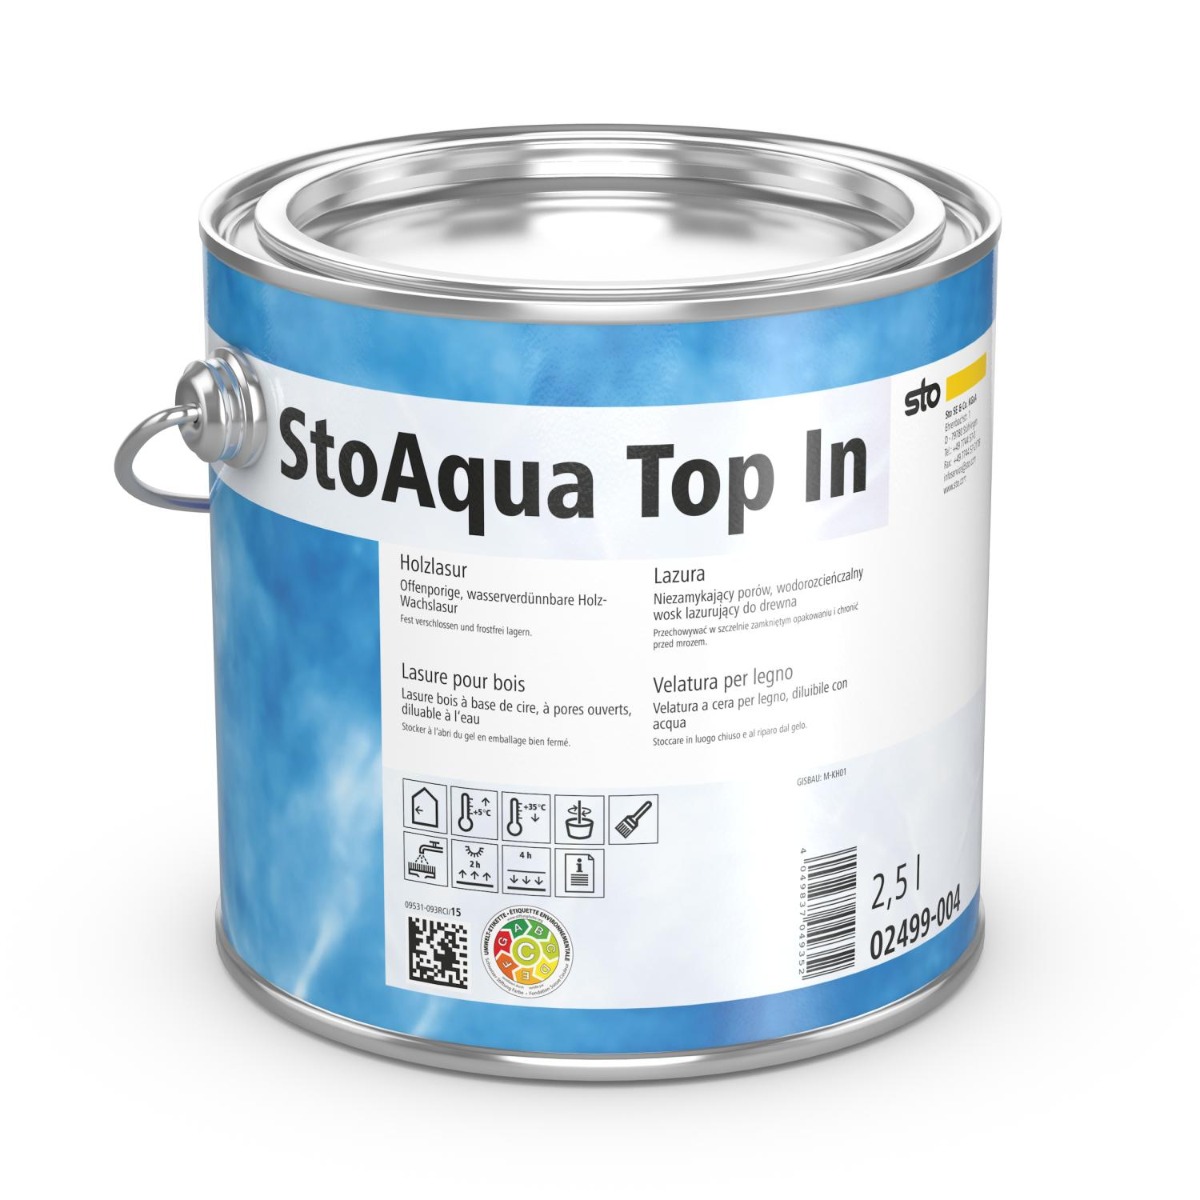 StoAqua Top In-Farbtonklasse III 2,5 Liter-2,5 Liter Dose